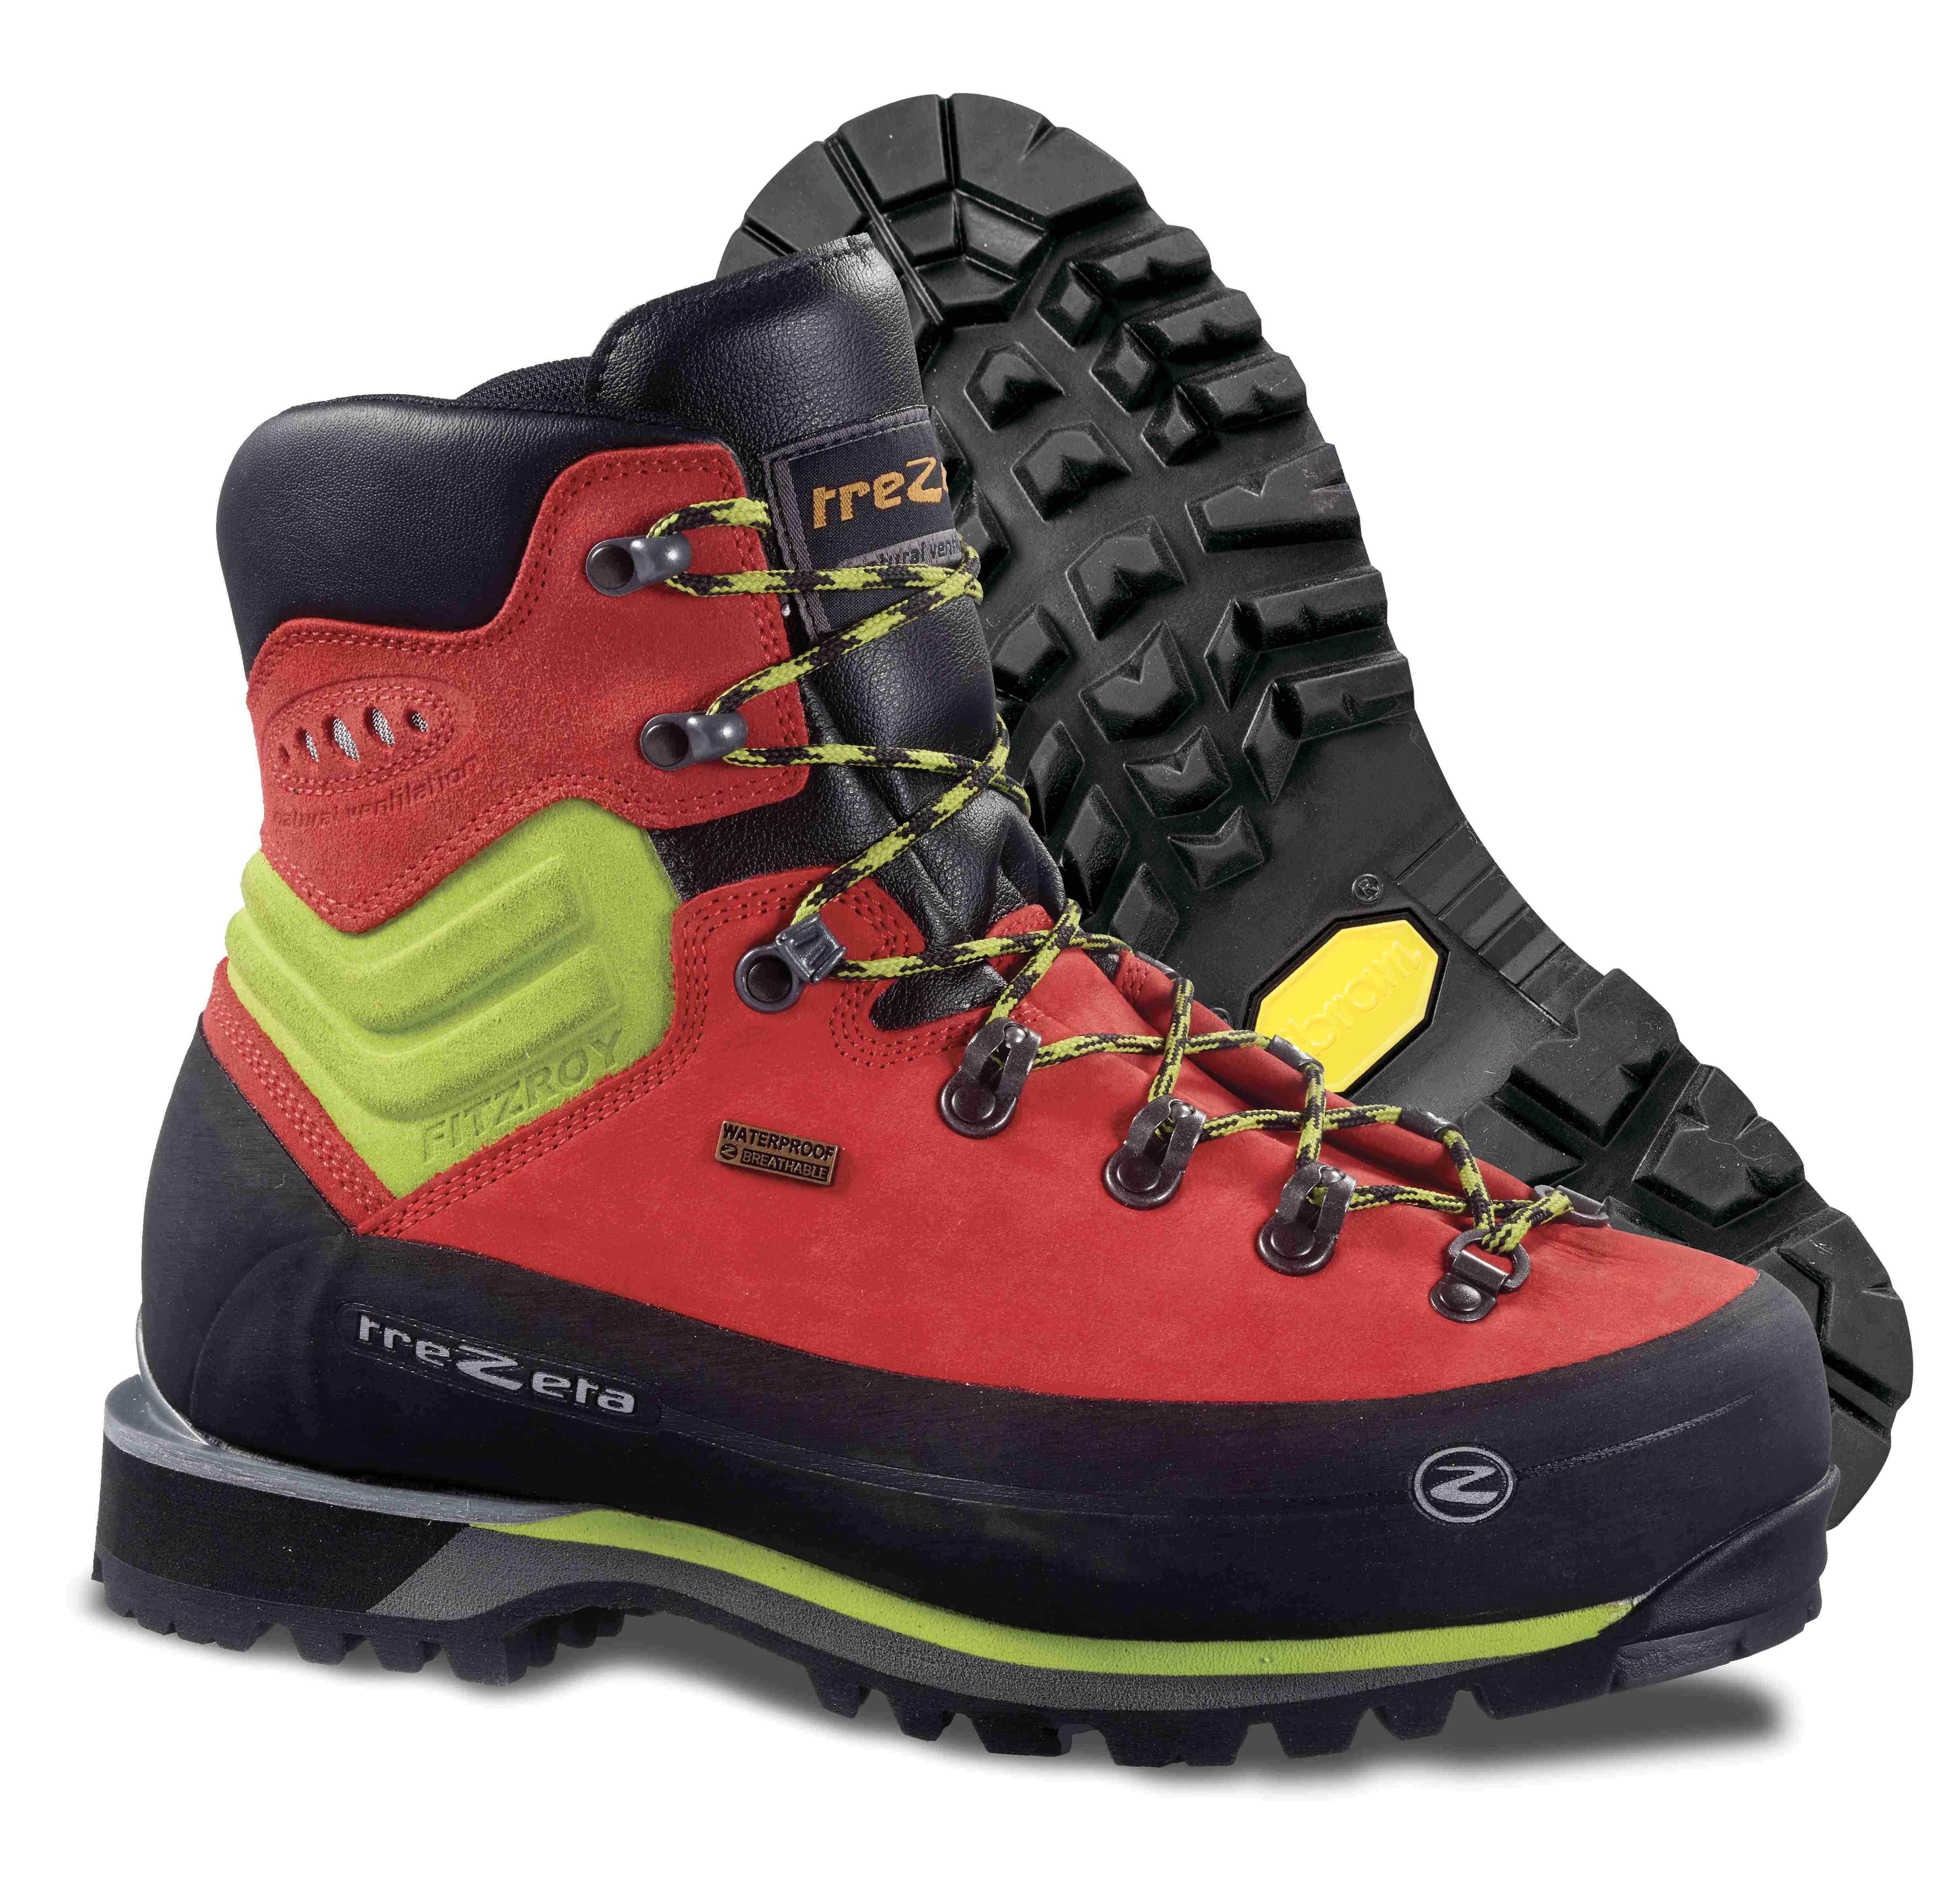 Trezeta hiking boots 'colorado mid ws' brown orange vibram size 45